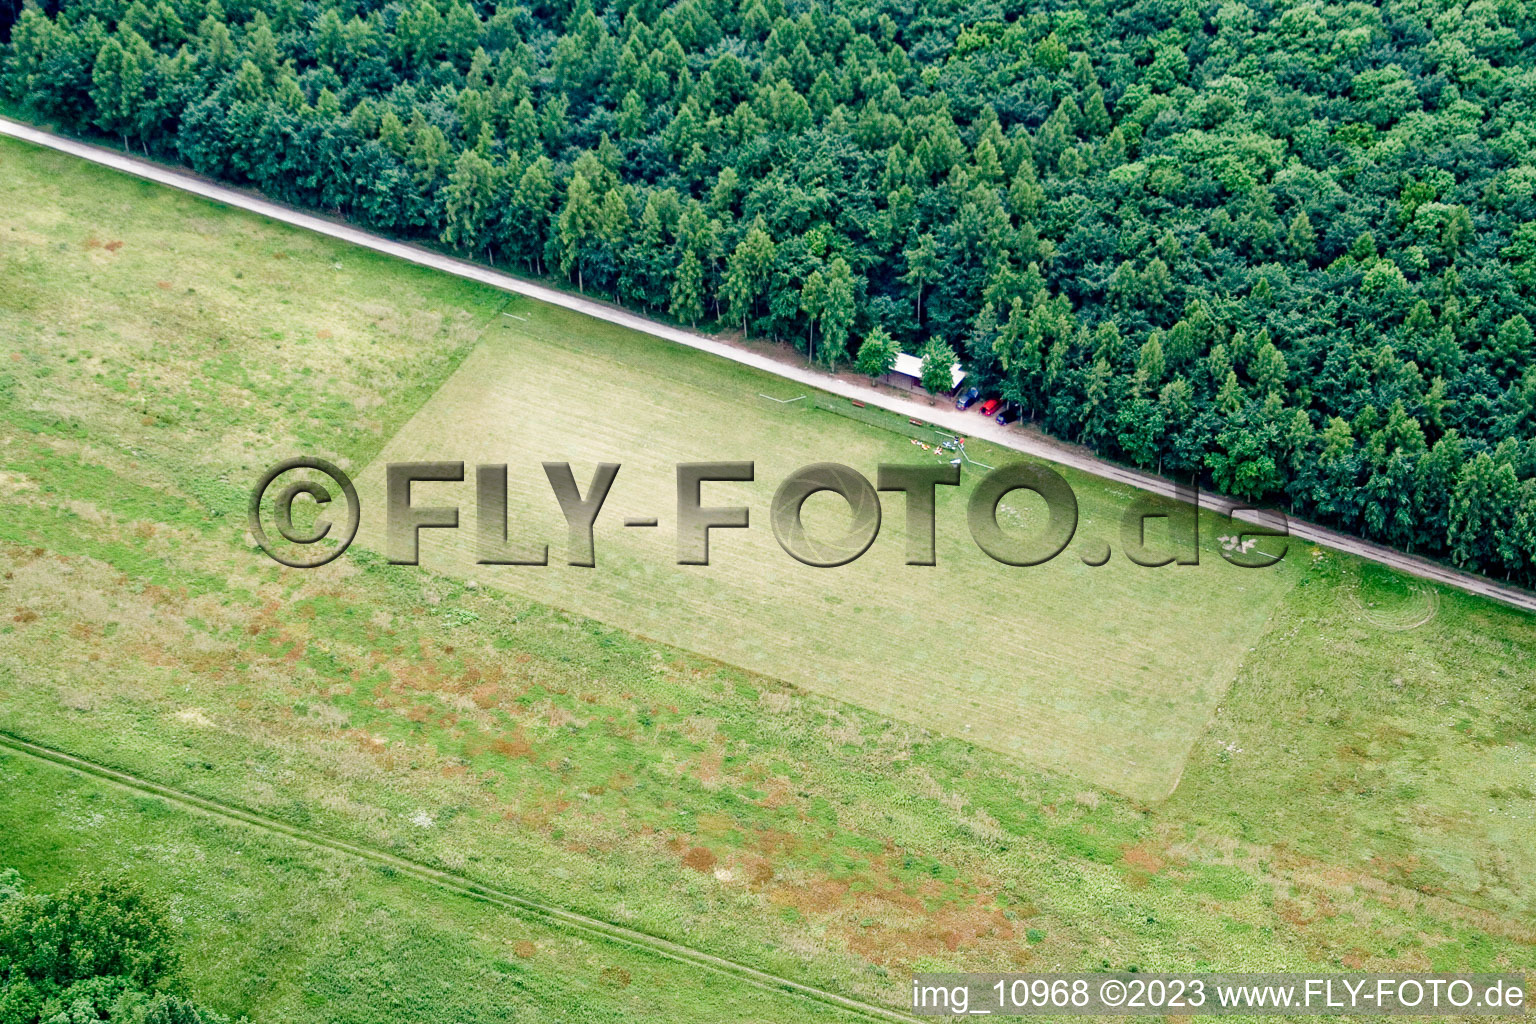 Vue aérienne de Aérodrome modèle MSC Rülzheim vu du nord-ouest à Rülzheim dans le département Rhénanie-Palatinat, Allemagne